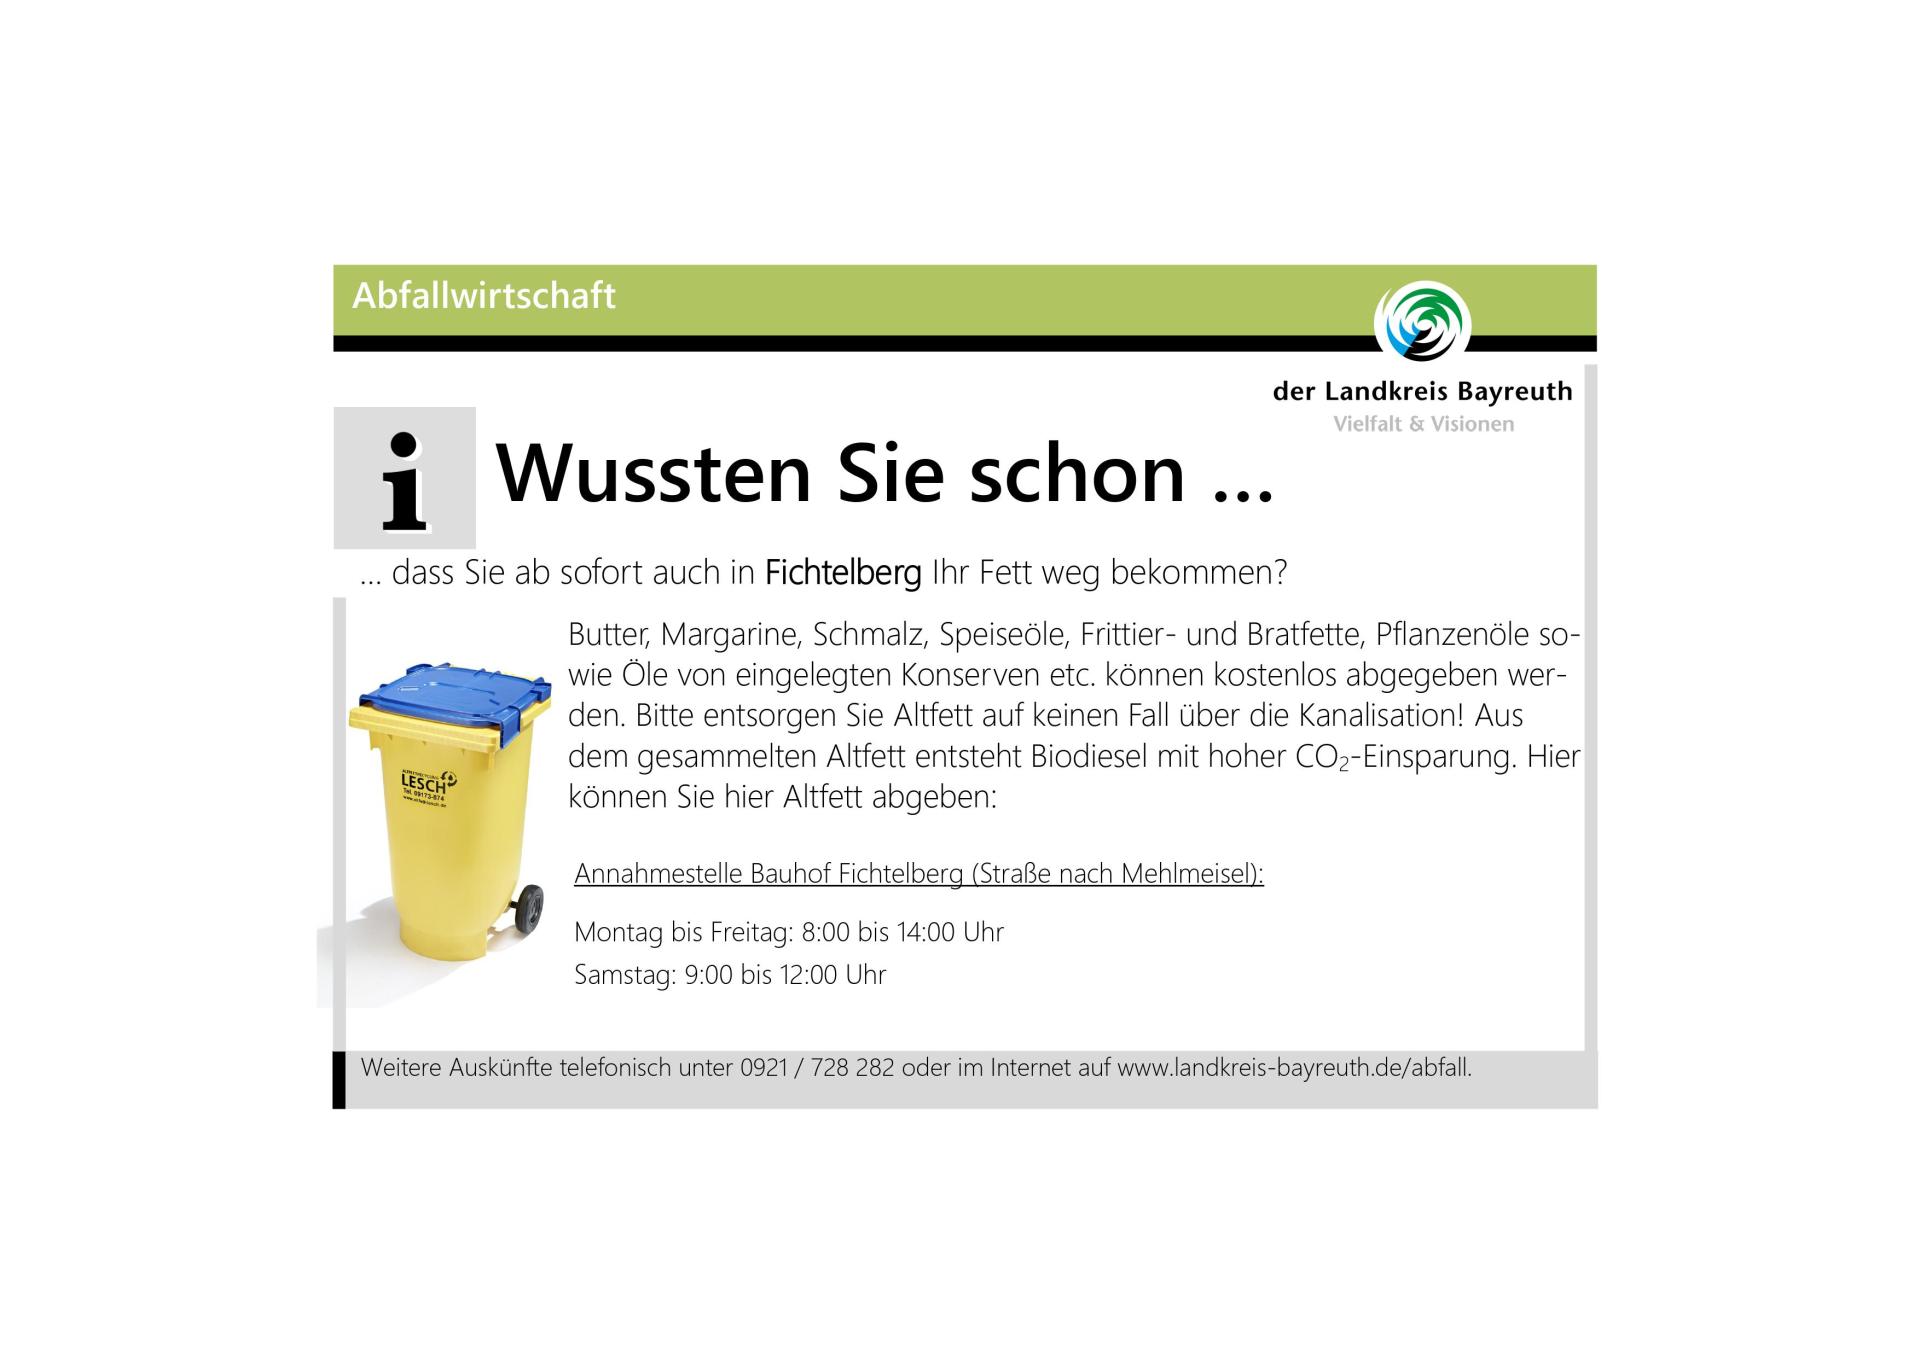 Abfallwirtschaft - Altfett in Fichtelberg entsorgen